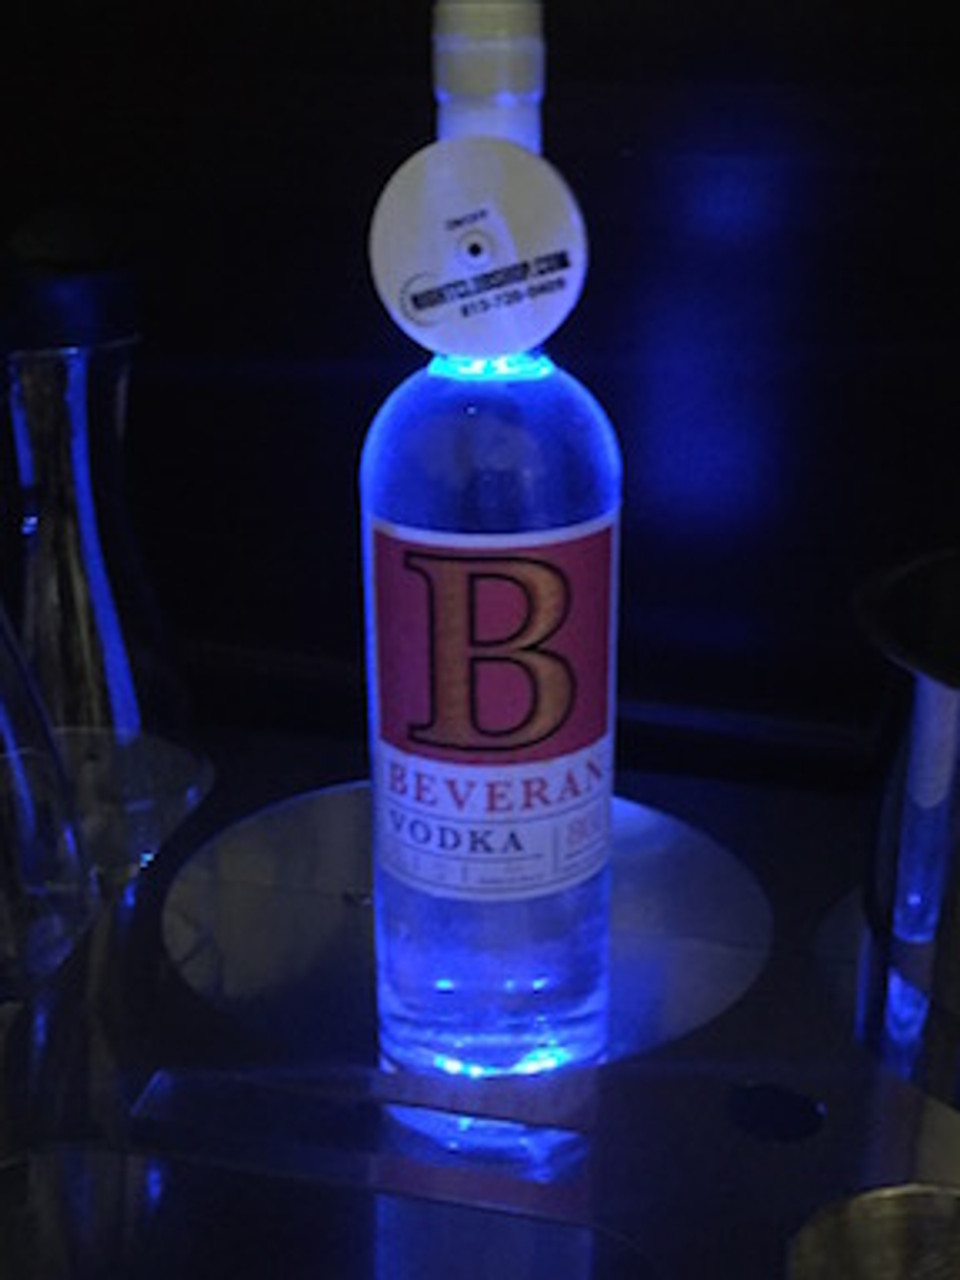 Beveran-Vodka-Light-up-illuminated-illuminator-Coaster-pad-Glorifier-mini-bottle-Glow-LEDGlow-Liquor-light pad-Nightclubshop
